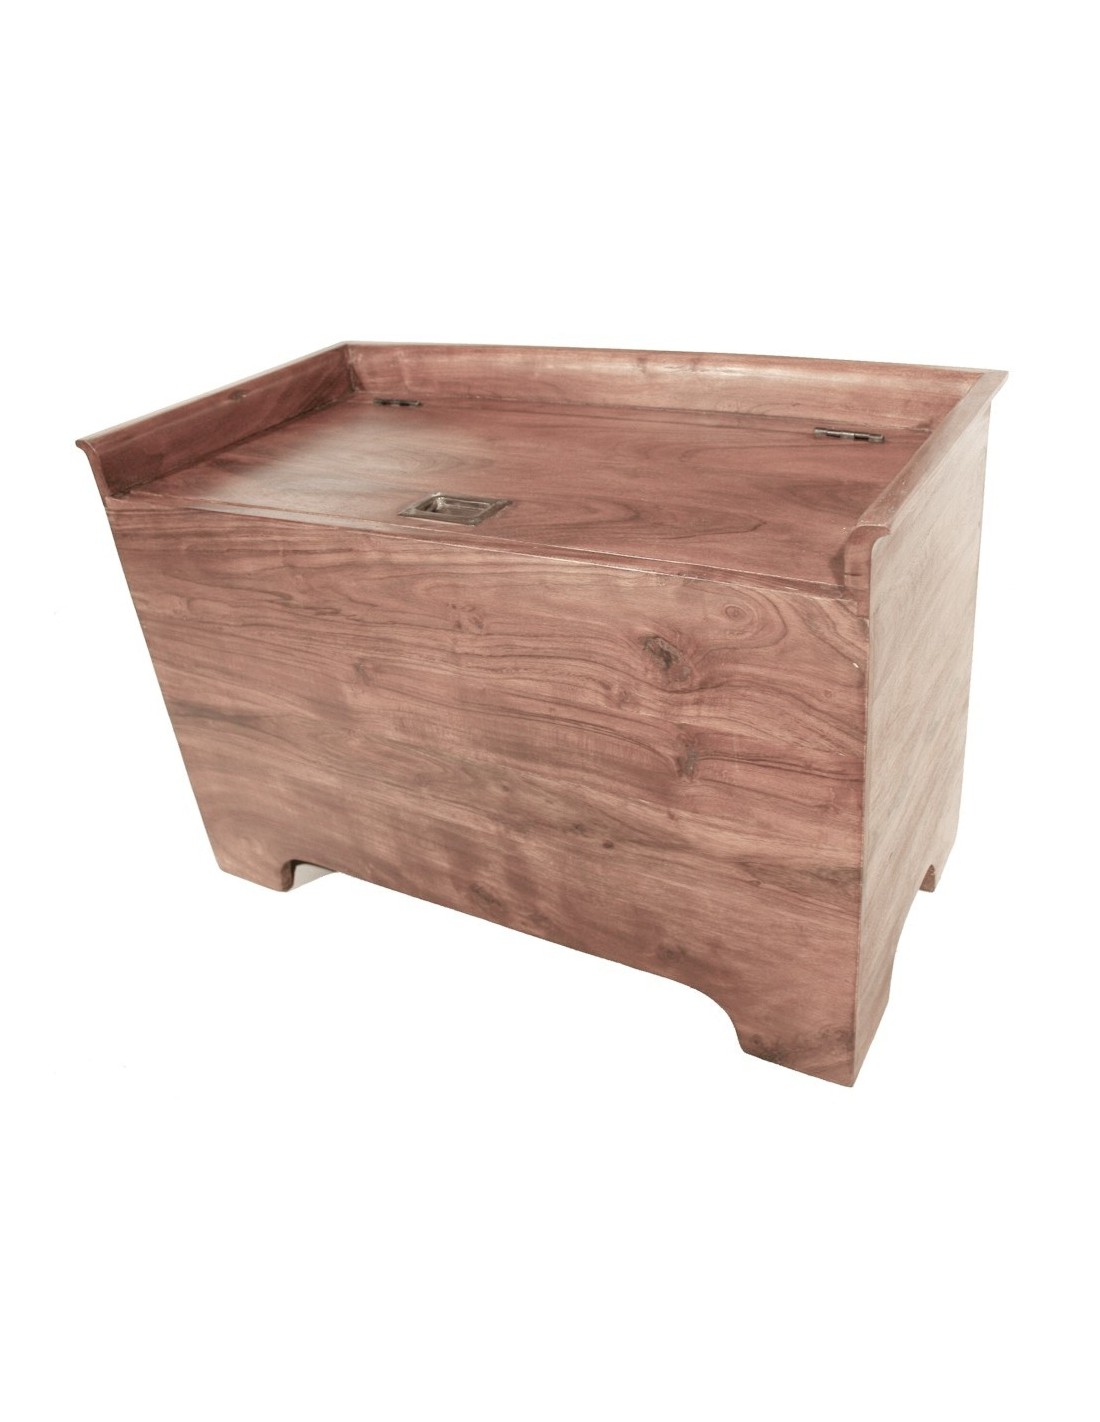 Baúl de madera de acacia con bordes